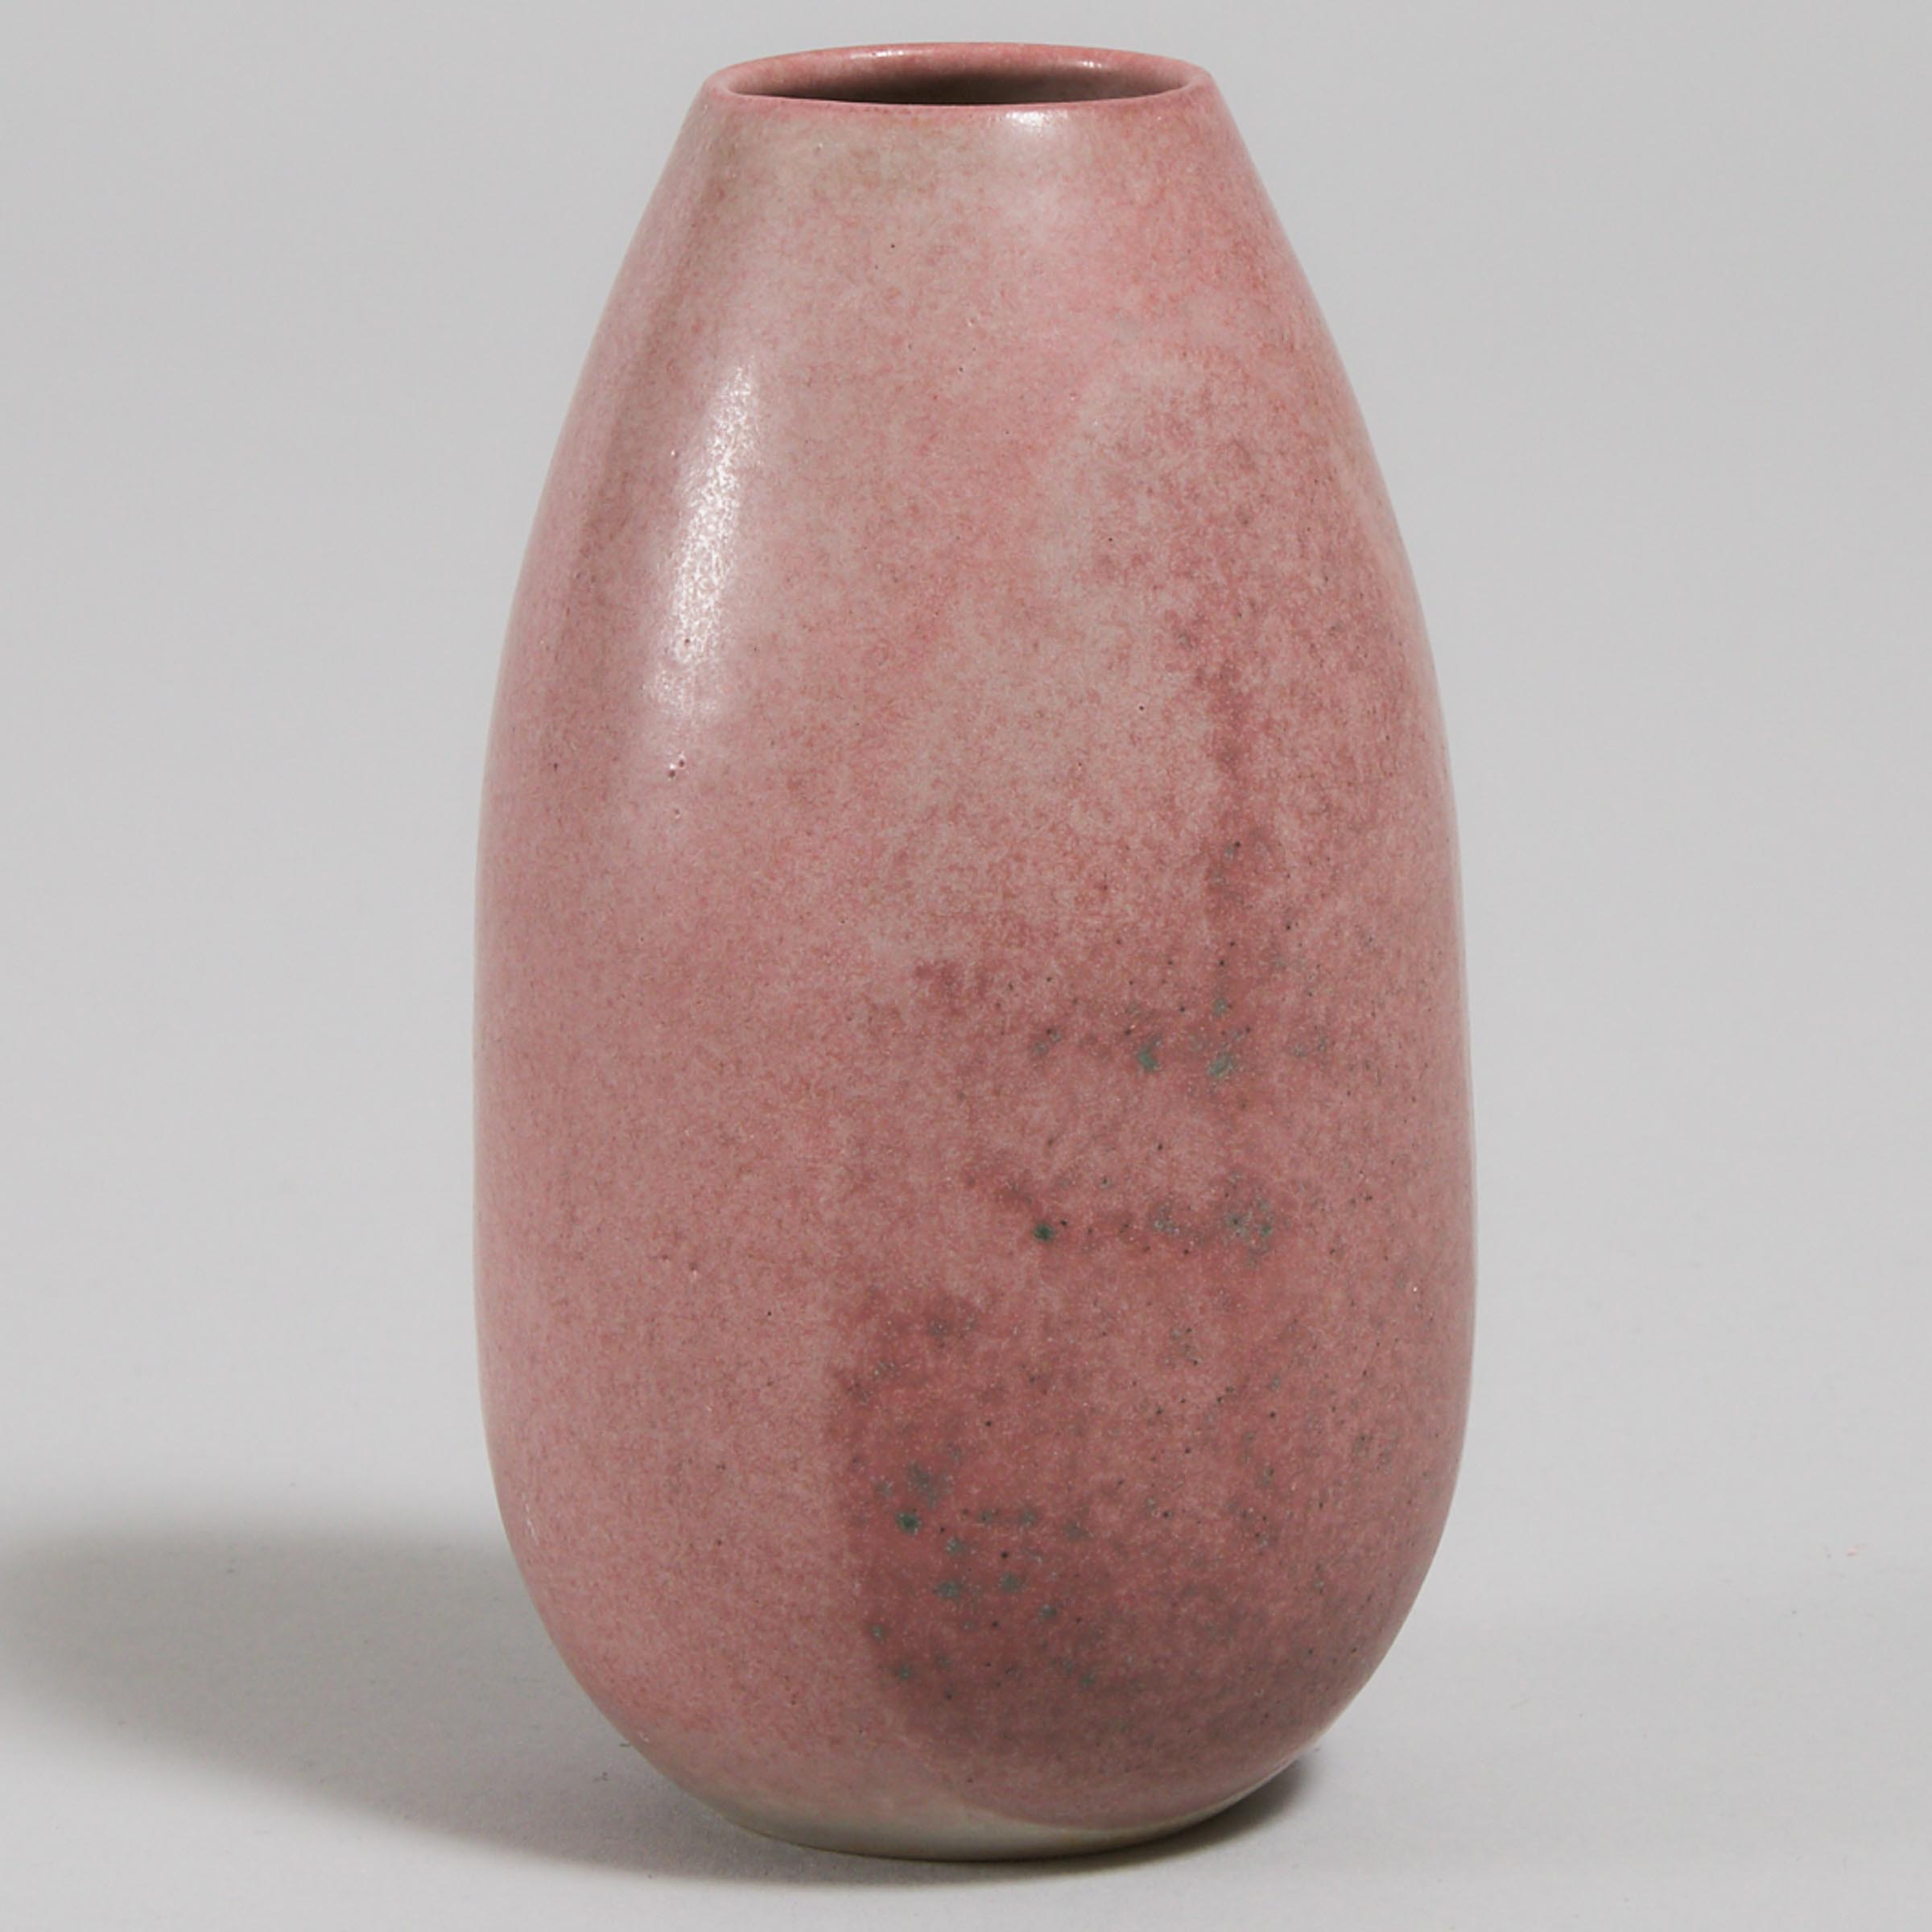 Deichmann Mottled Red Glazed Vase, Kjeld & Erica Deichmann, mid-20th century